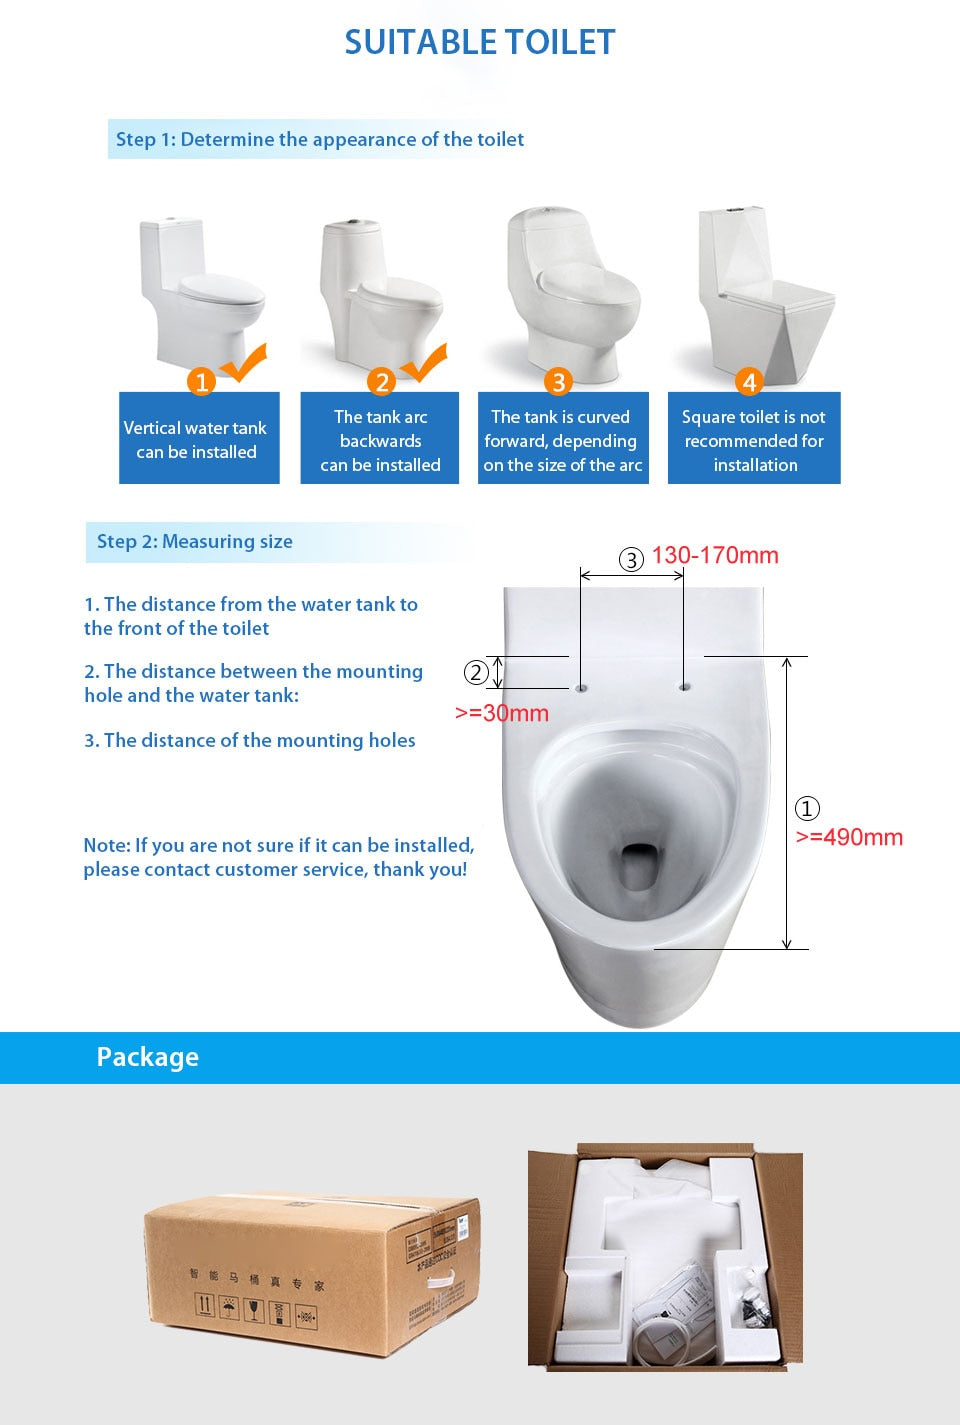 Smart Toilet Seat - Massage